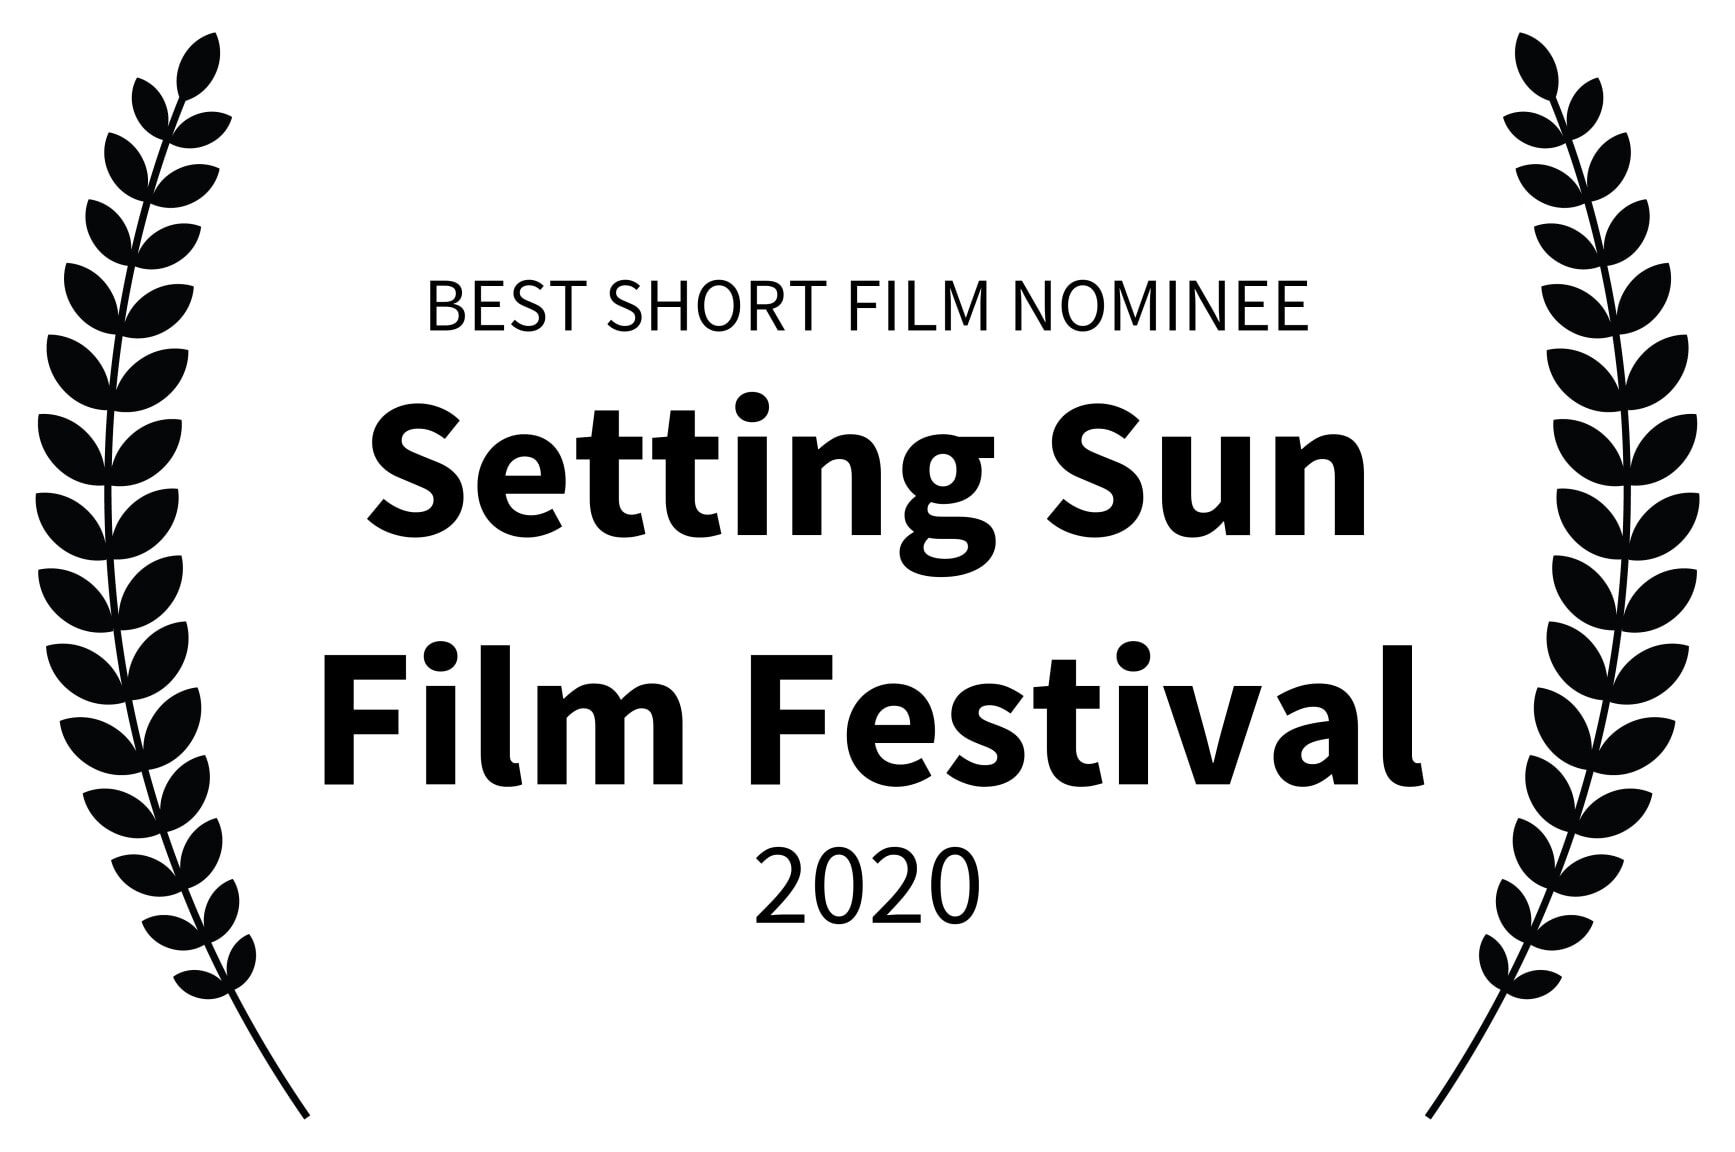 BEST SHORT FILM NOMINEE - Setting Sun Film Festival - 2020